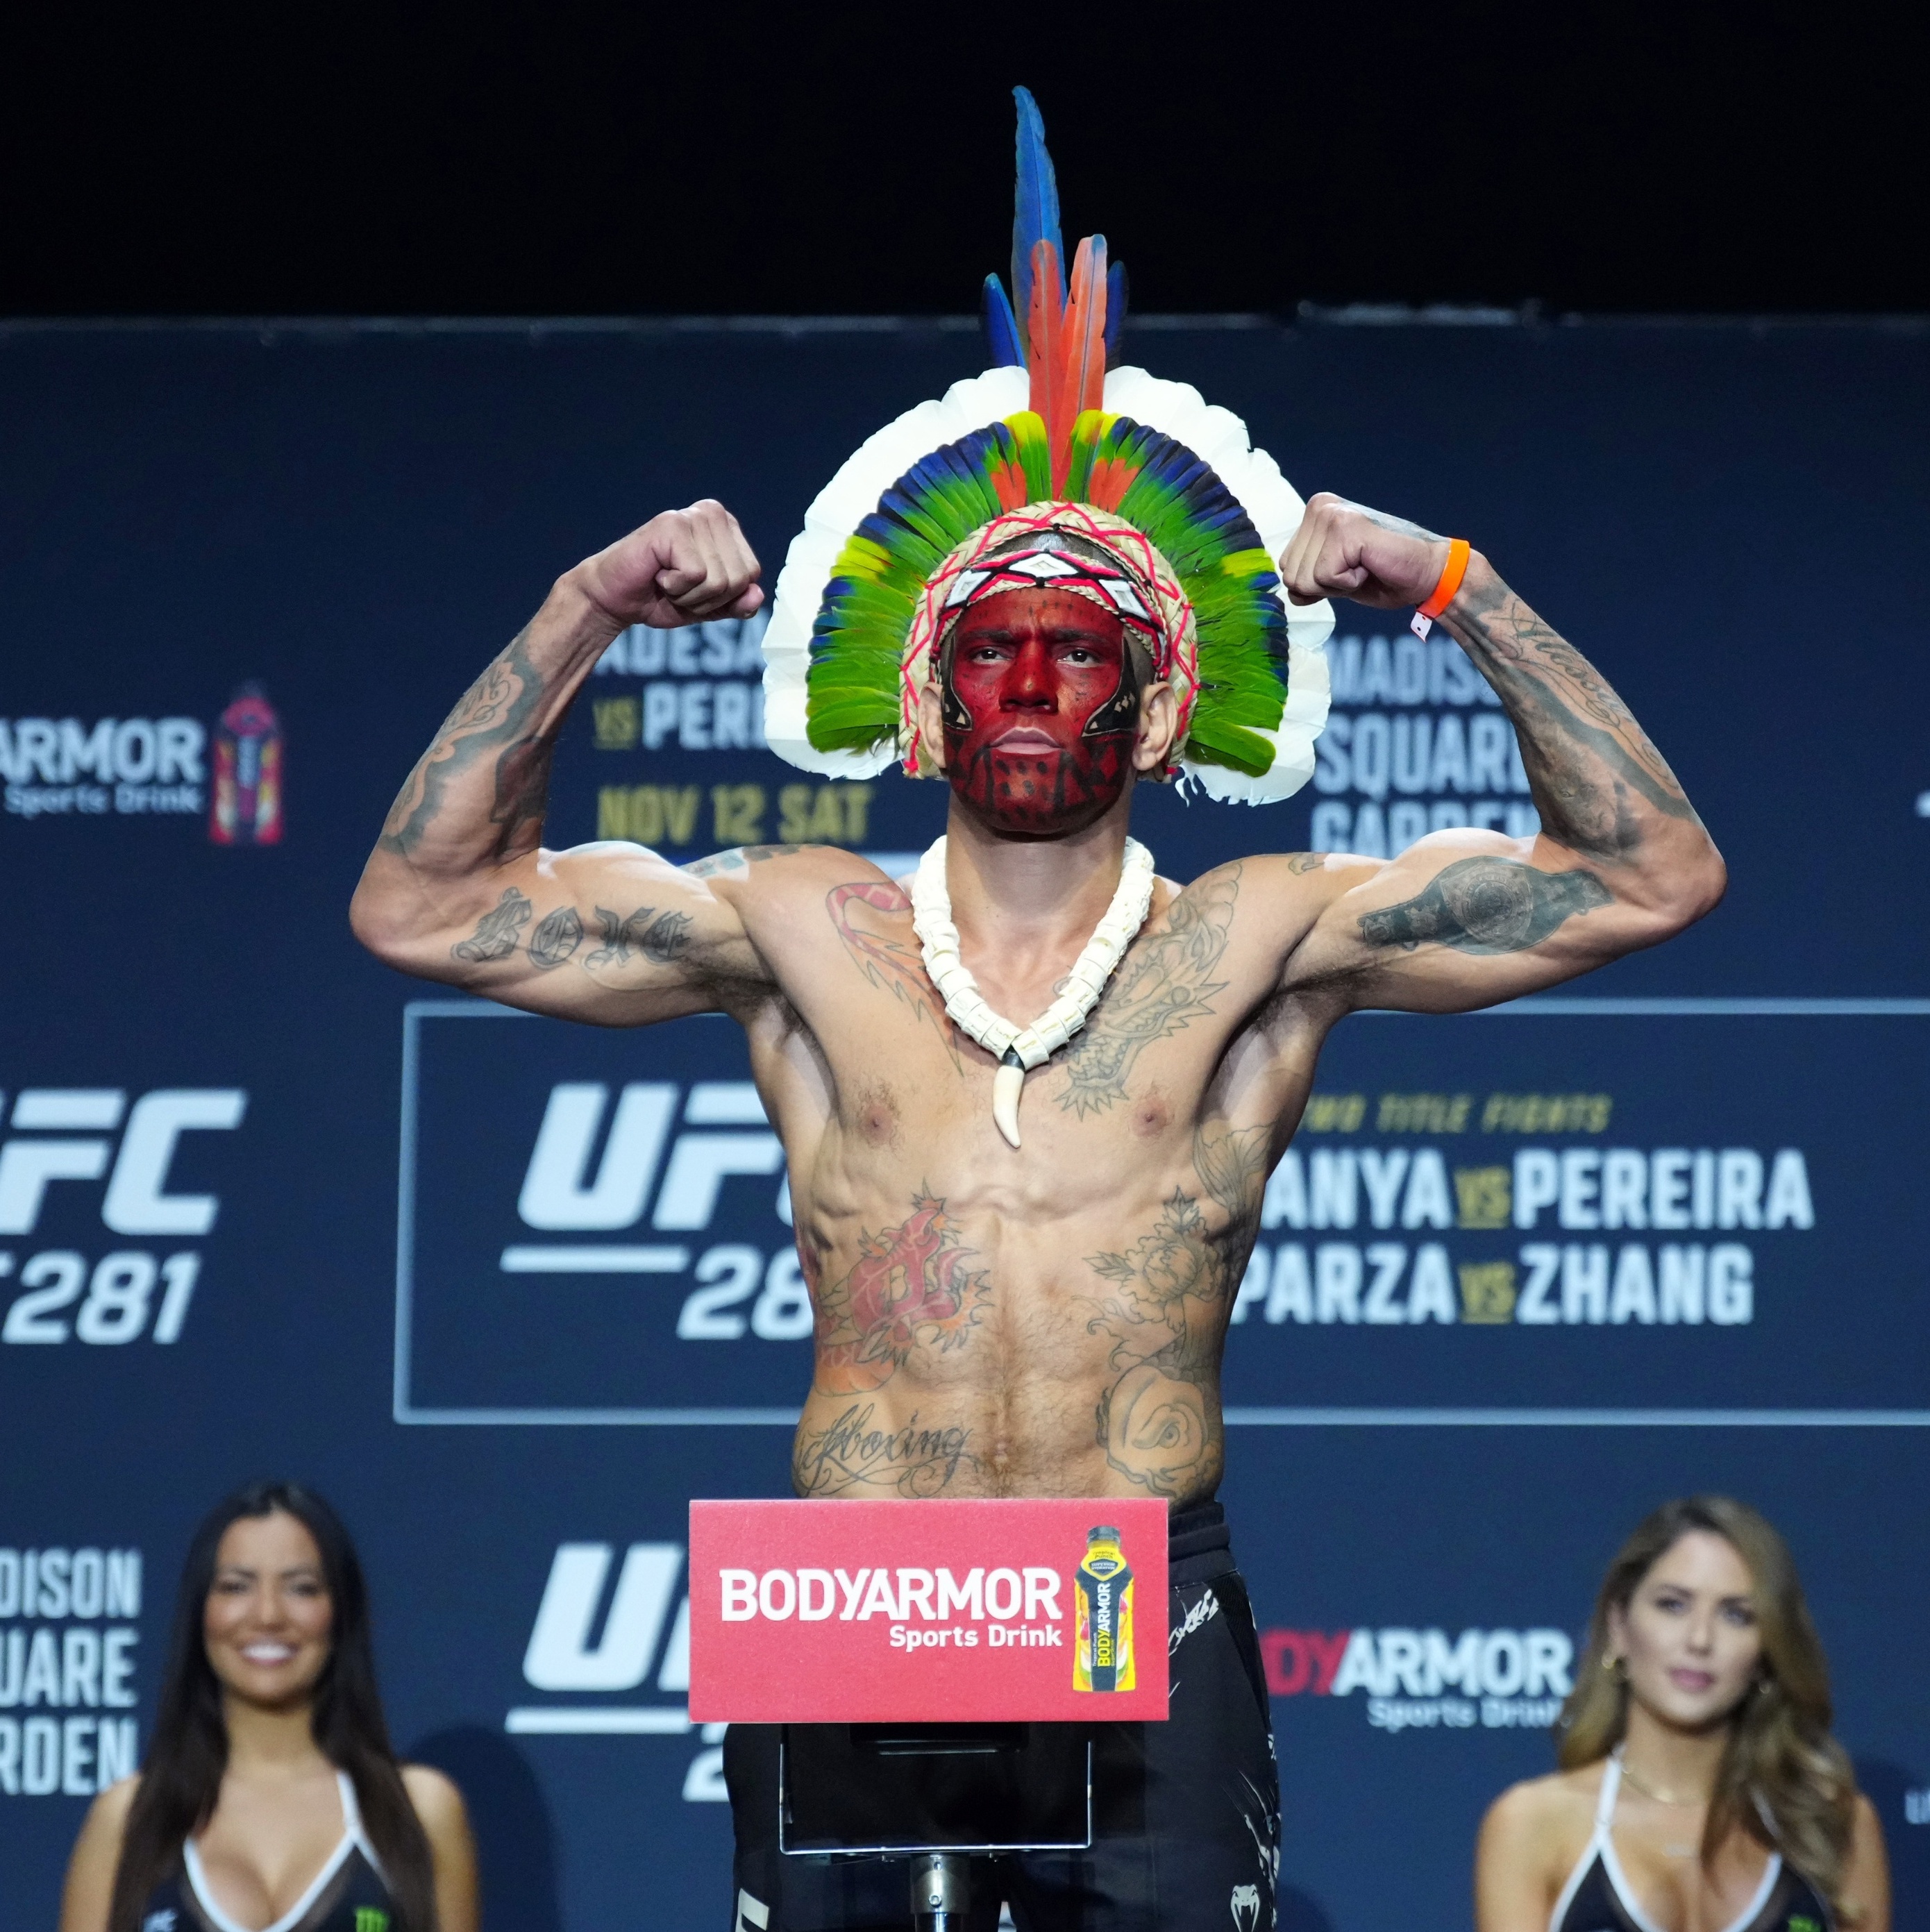 UFC: quem é Alex Poatan, brasileiro que desafia Israel Adesanya?